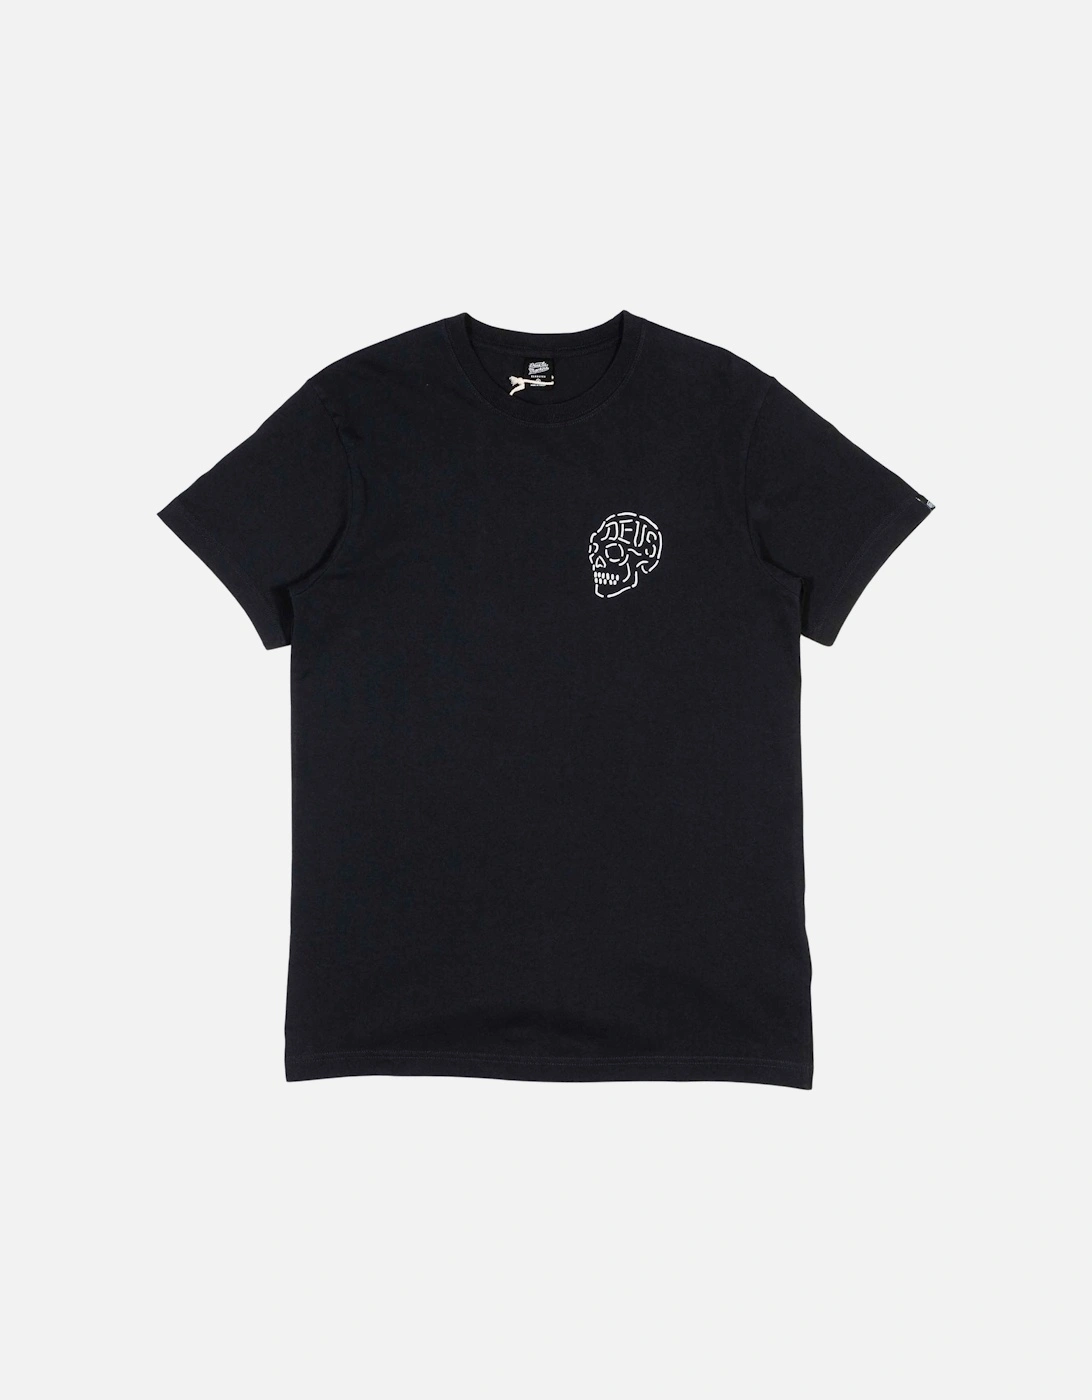 Venice Skull T-Shirt - Black, 3 of 2